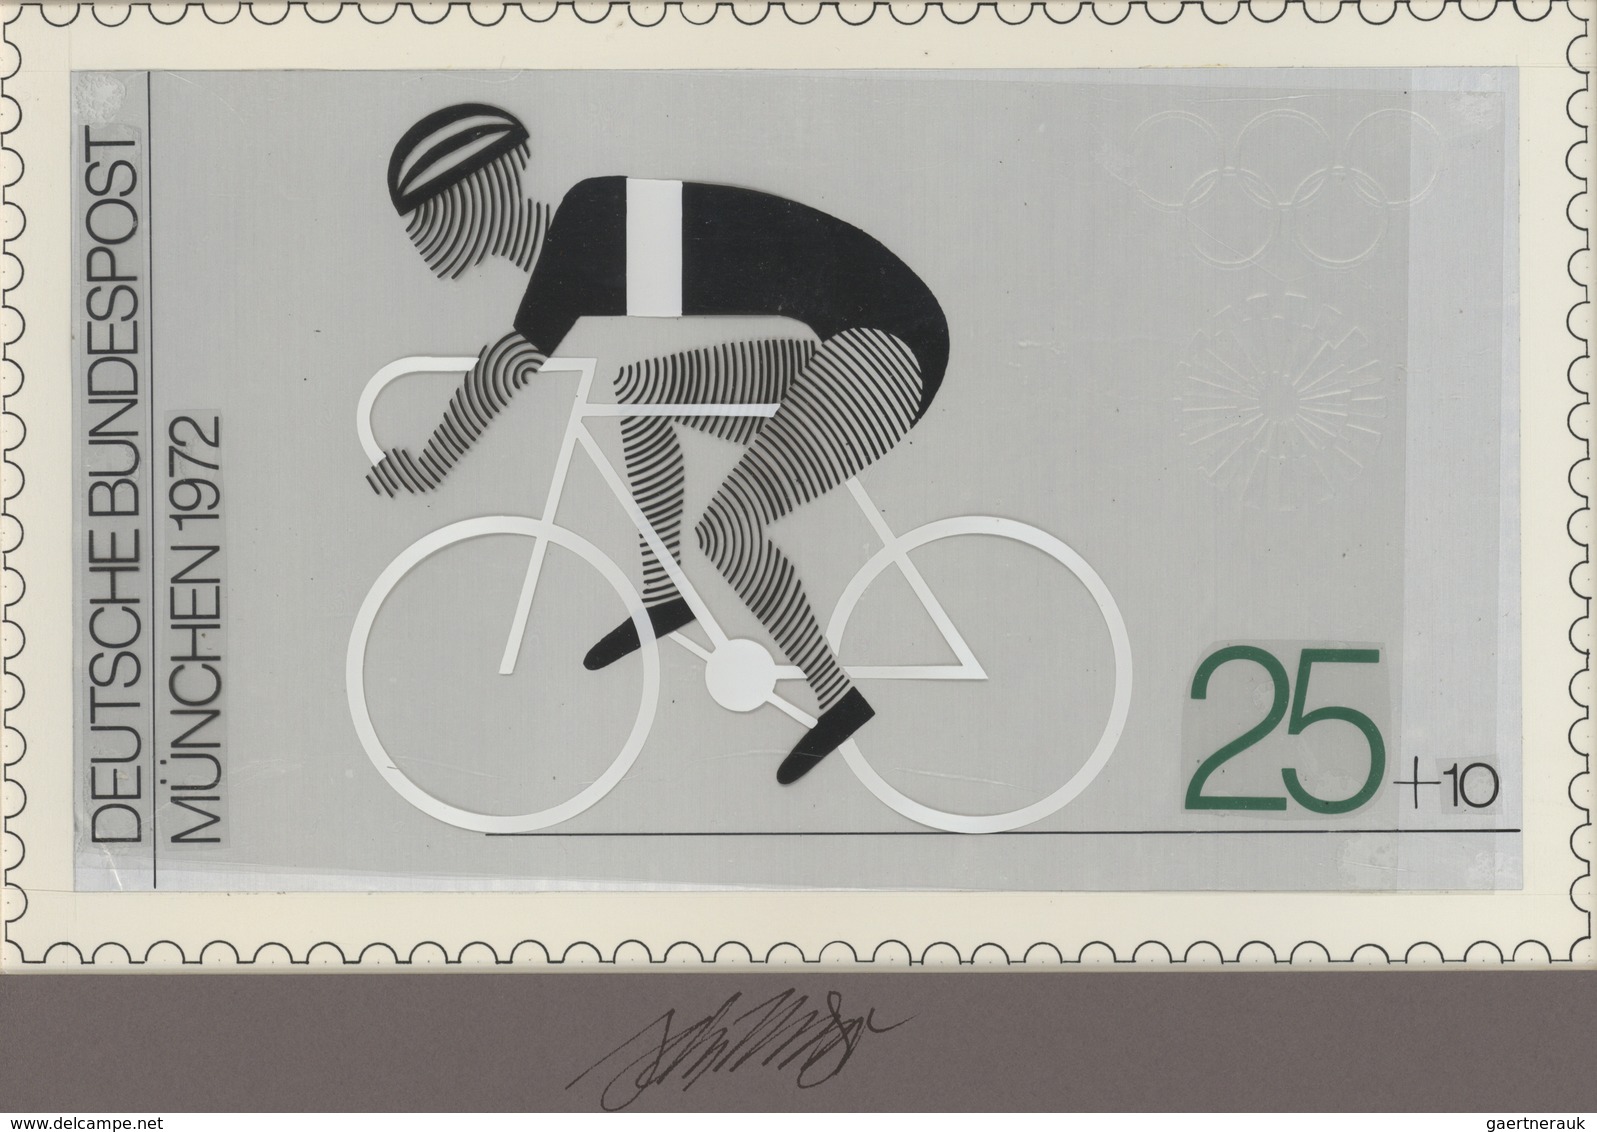 Thematik: Sport-Radsport / Sport-cycling: 1972, Bund, Nicht Angenommener Künstlerentwurf (26,5x16) V - Radsport